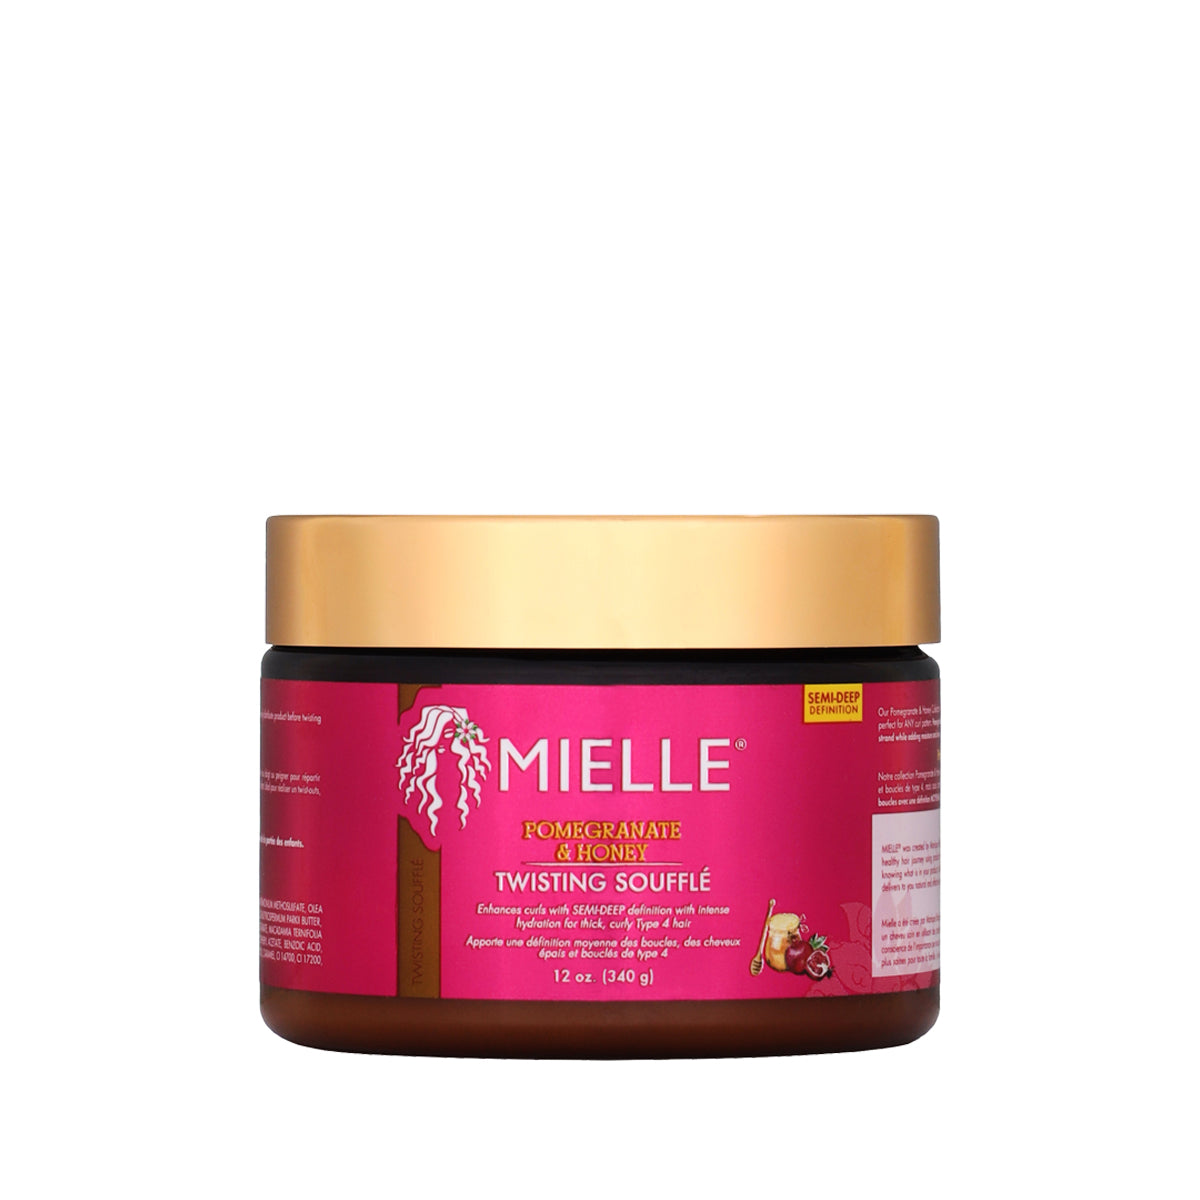 Mielle Organics - Pomegranate & Honey Twisting Soufflé (Crème coiffante)